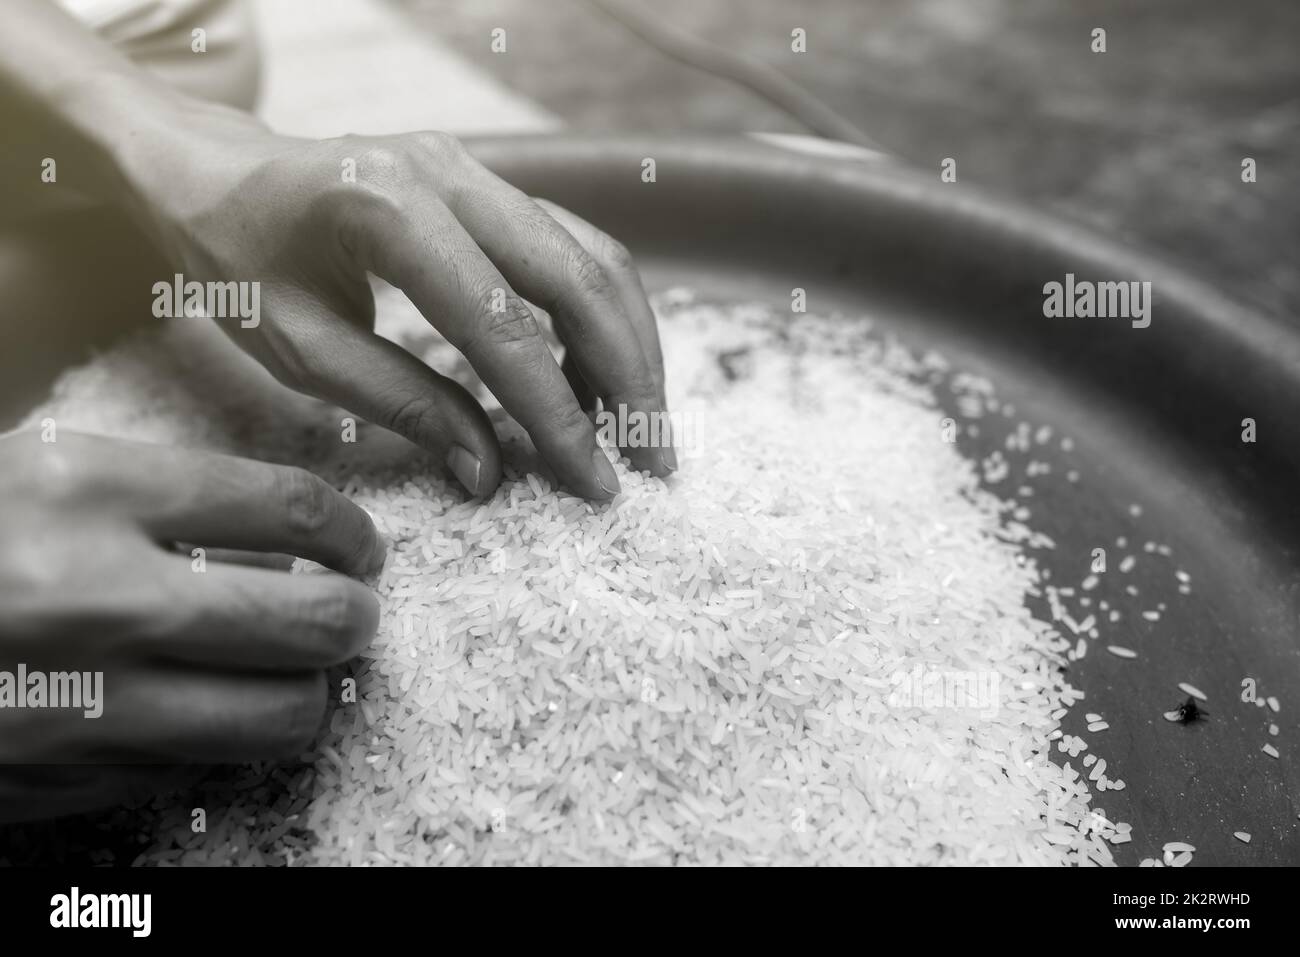 Das Konzept der globalen Nahrungsmittelkrise. Weibliche Hand, die Reis in einer Plastikschale hält. Ungekochter, gemahlener weißer Reis. Armes und Armutskonzept. Menschliche Katastrophe bei den Auswirkungen der globalen Nahrungsmittelkrise auf Klimawandel und Krieg. Stockfoto